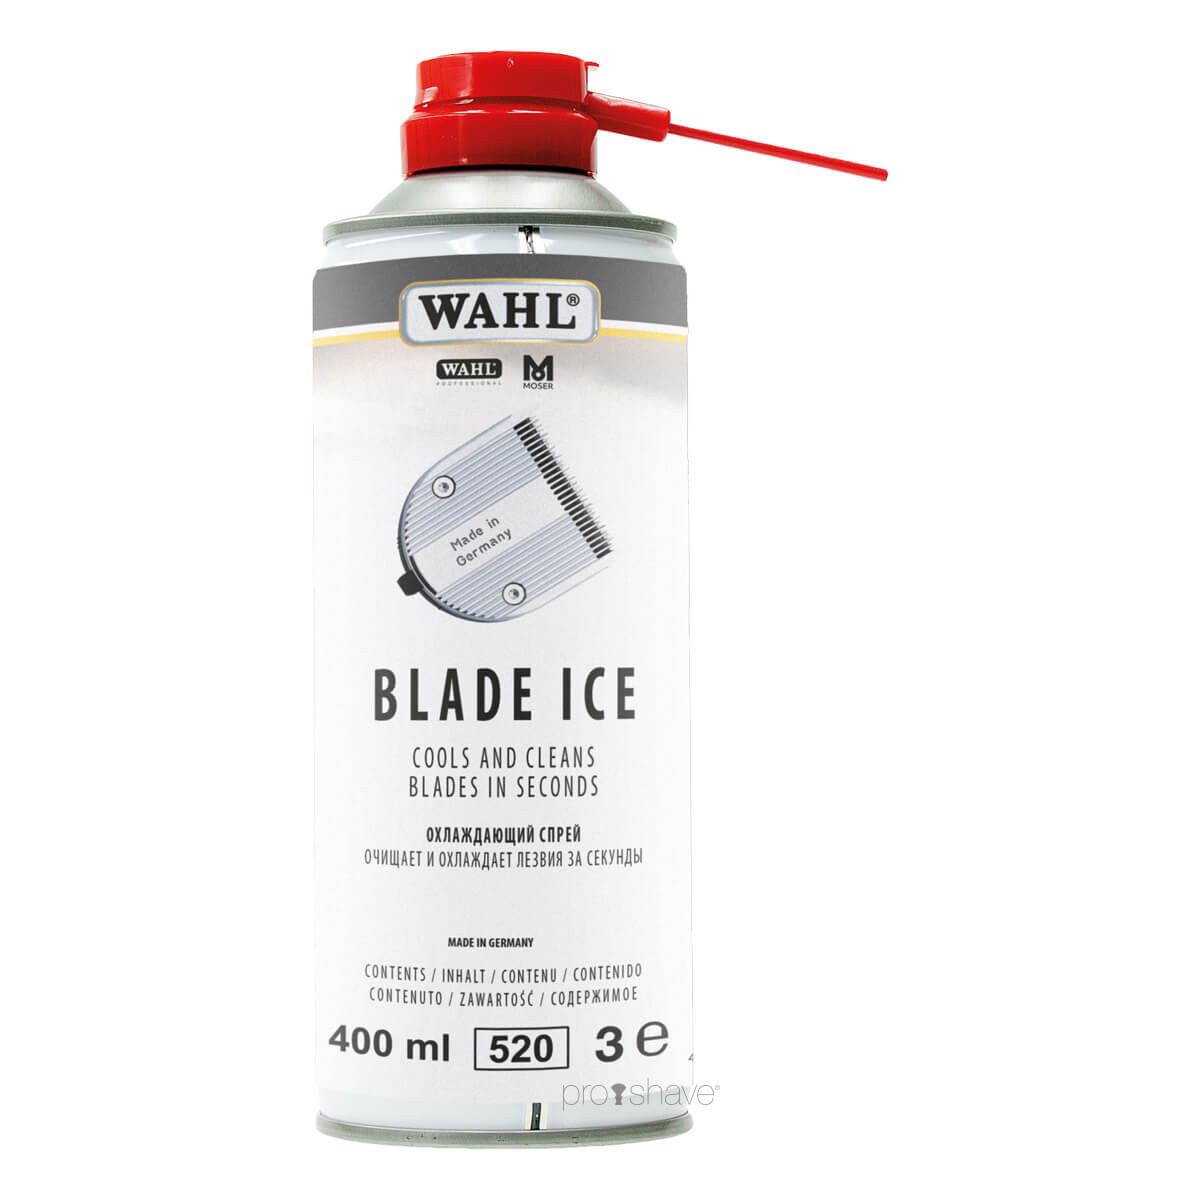 Billede af Wahl Professional Blade Ice Spray, 400 ml. hos Proshave